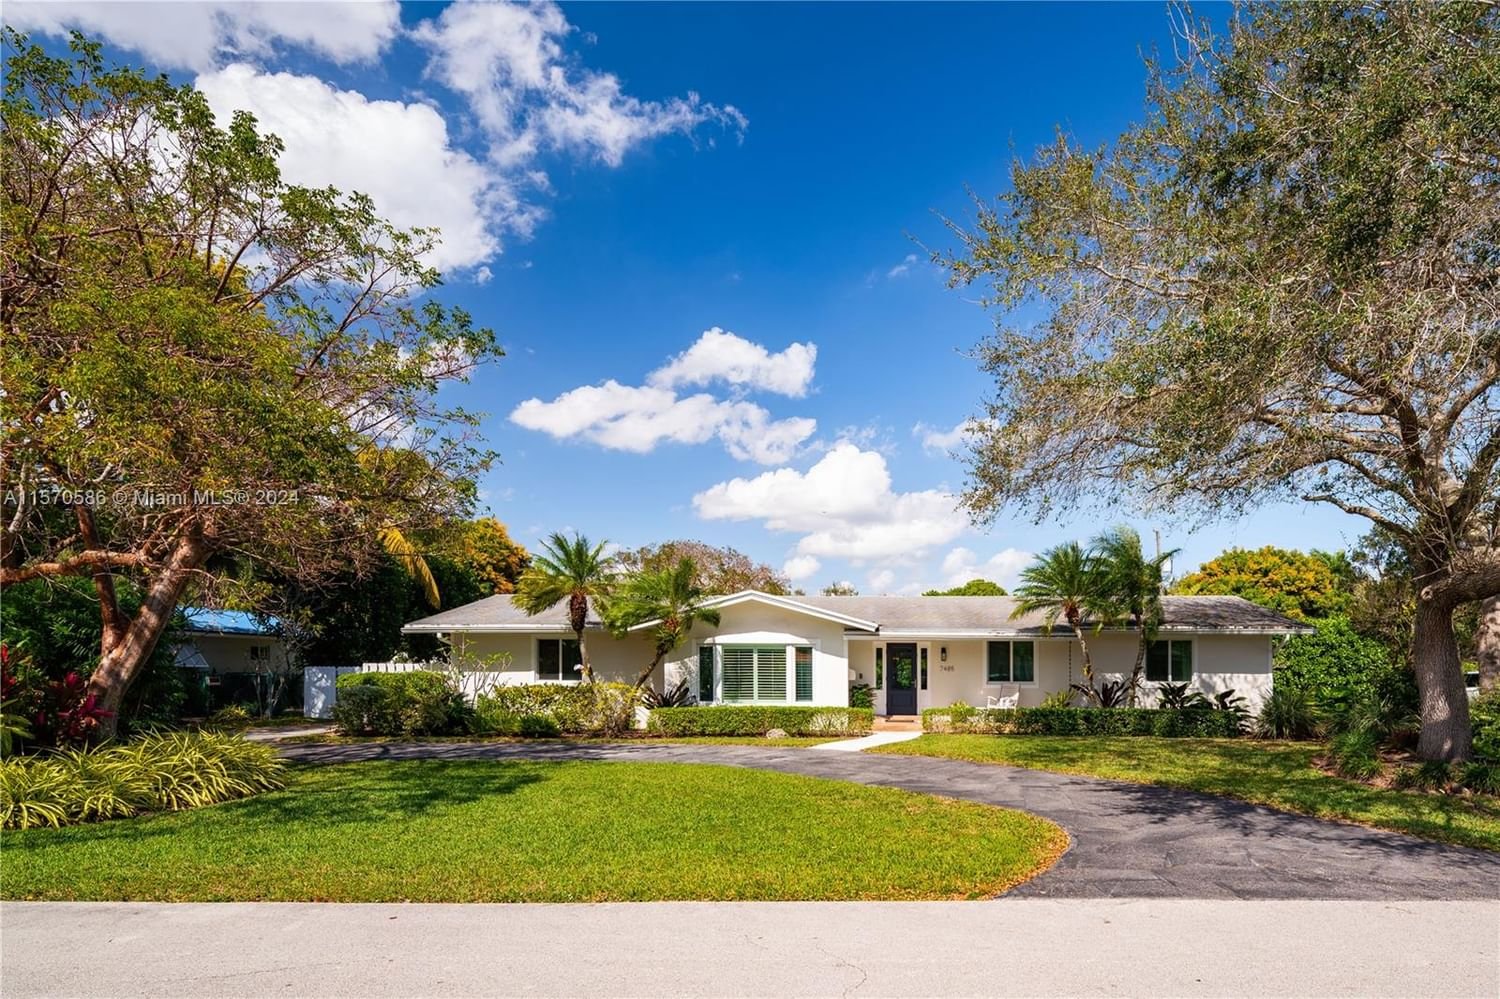 Real estate property located at 7485 159th Ter, Miami-Dade County, PALMETTO ROAD ESTS, Palmetto Bay, FL